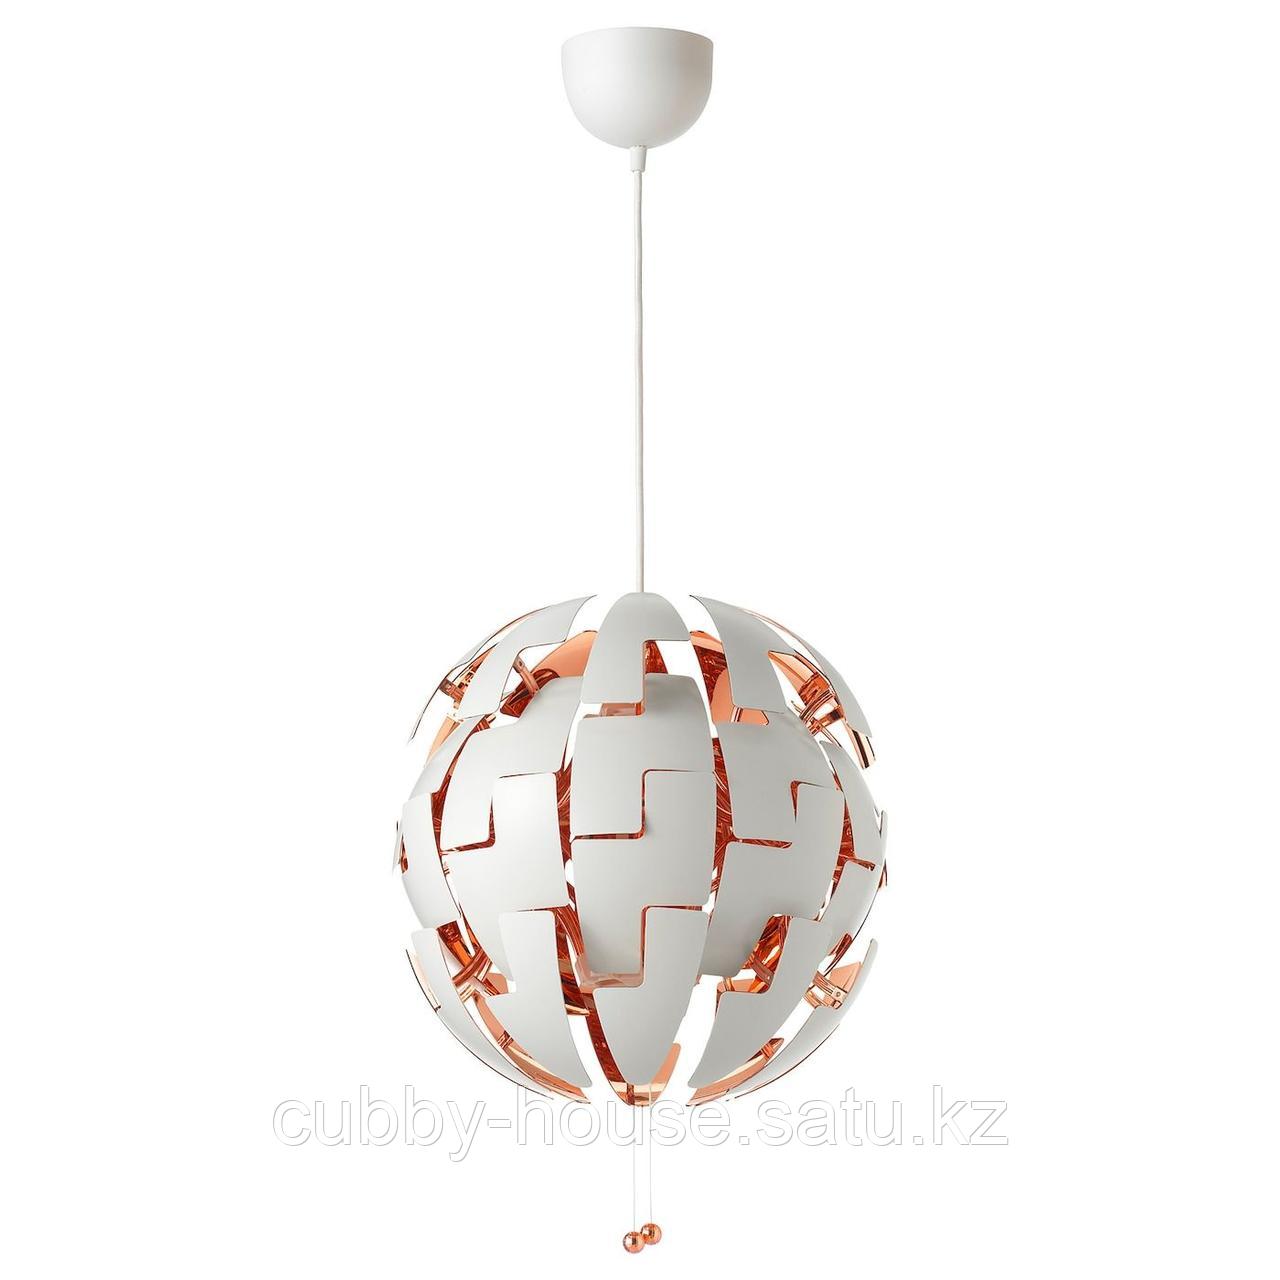 ИКЕА ПС 2014 Подвесной светильник, белый, медный, 35 см